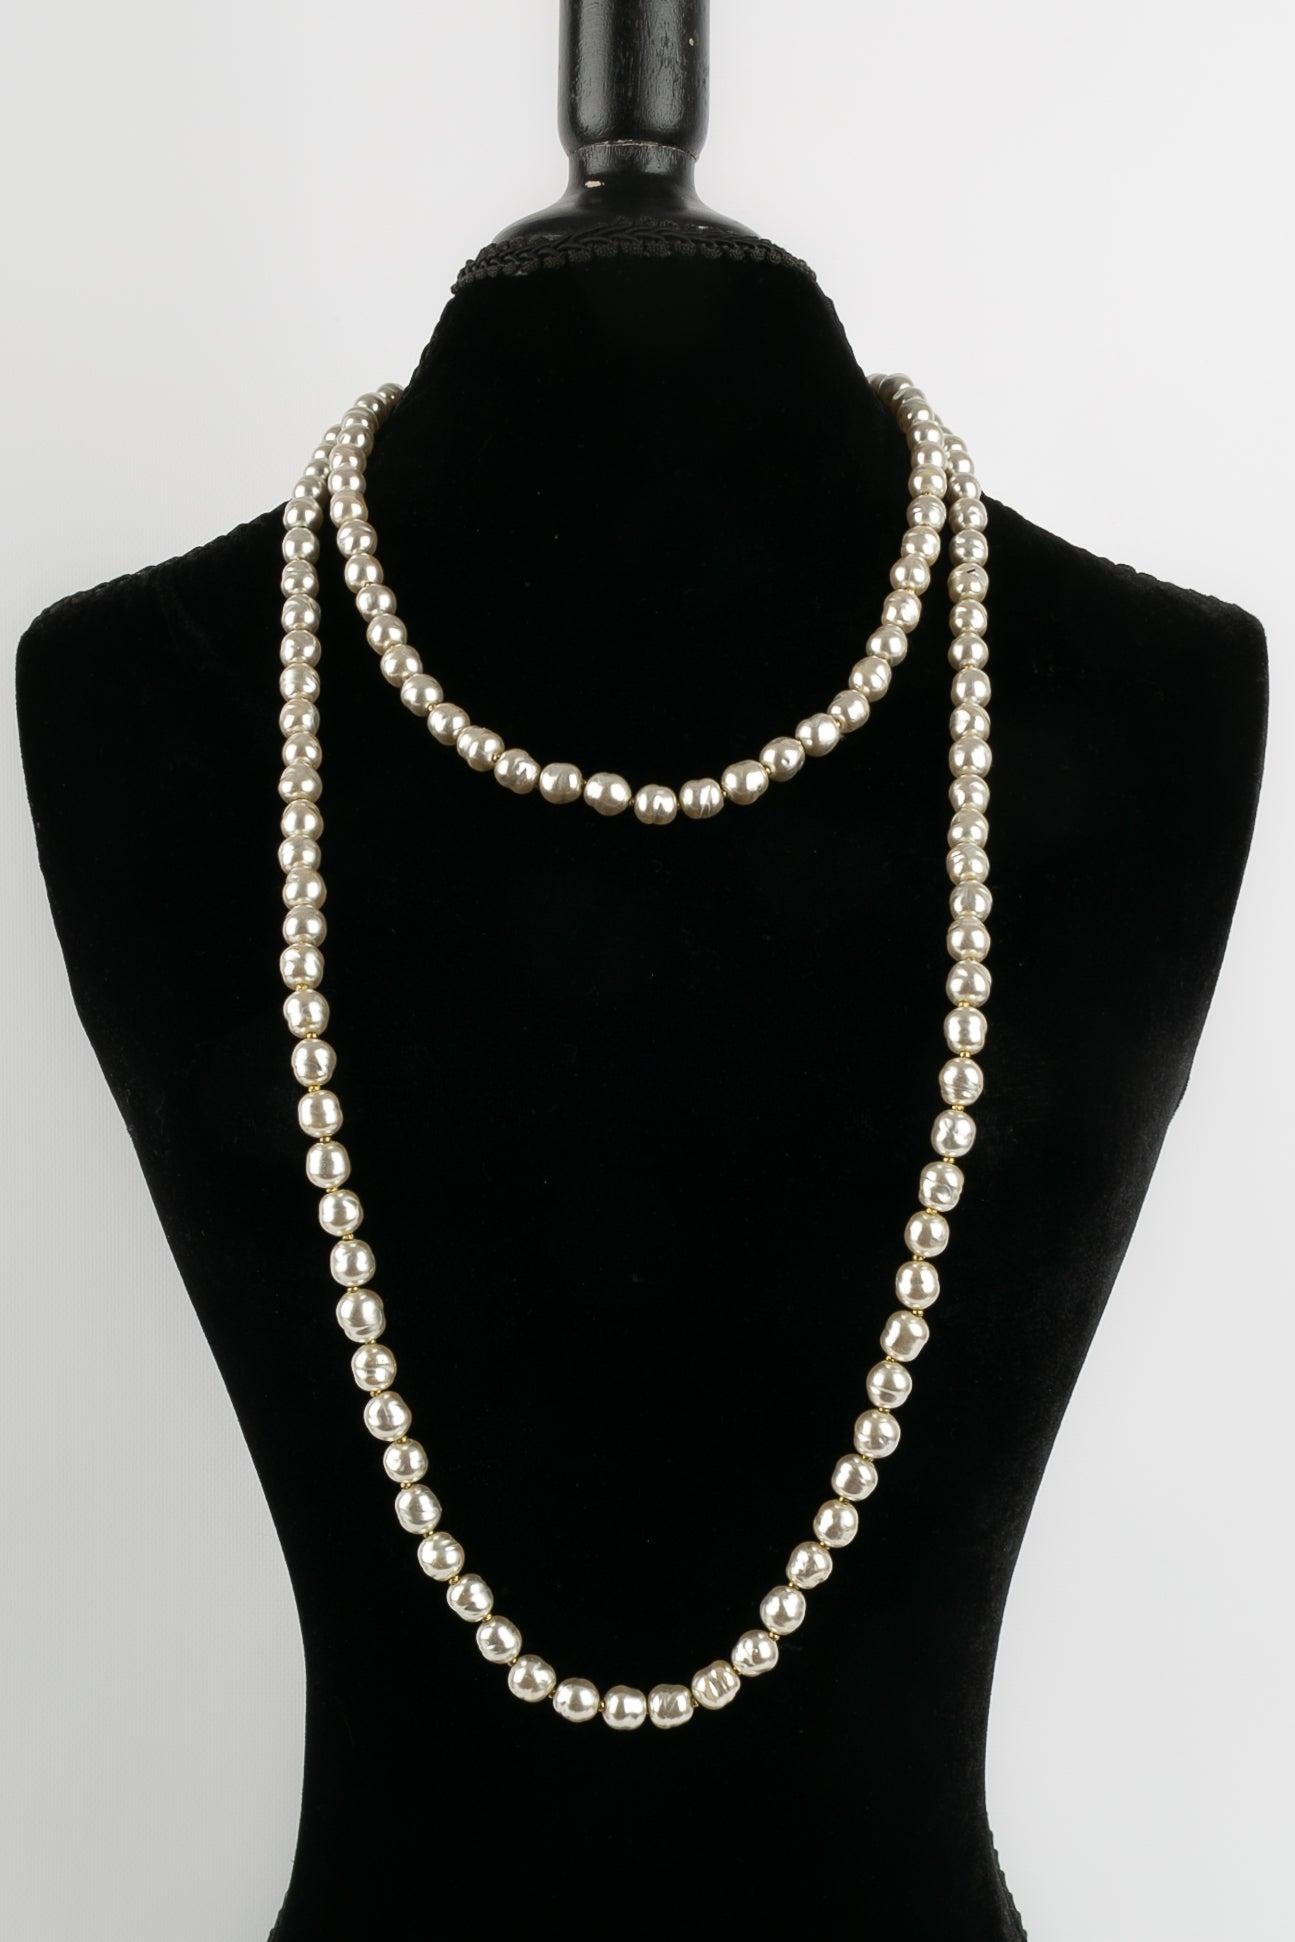 Chanel - Collier de perles nacrées dans les tons gris clair. Collectional 1981.

Informations complémentaires : 
Dimensions : Longueur : 157 cm
Condit : Très bon état.
Numéro de référence du vendeur : CB106